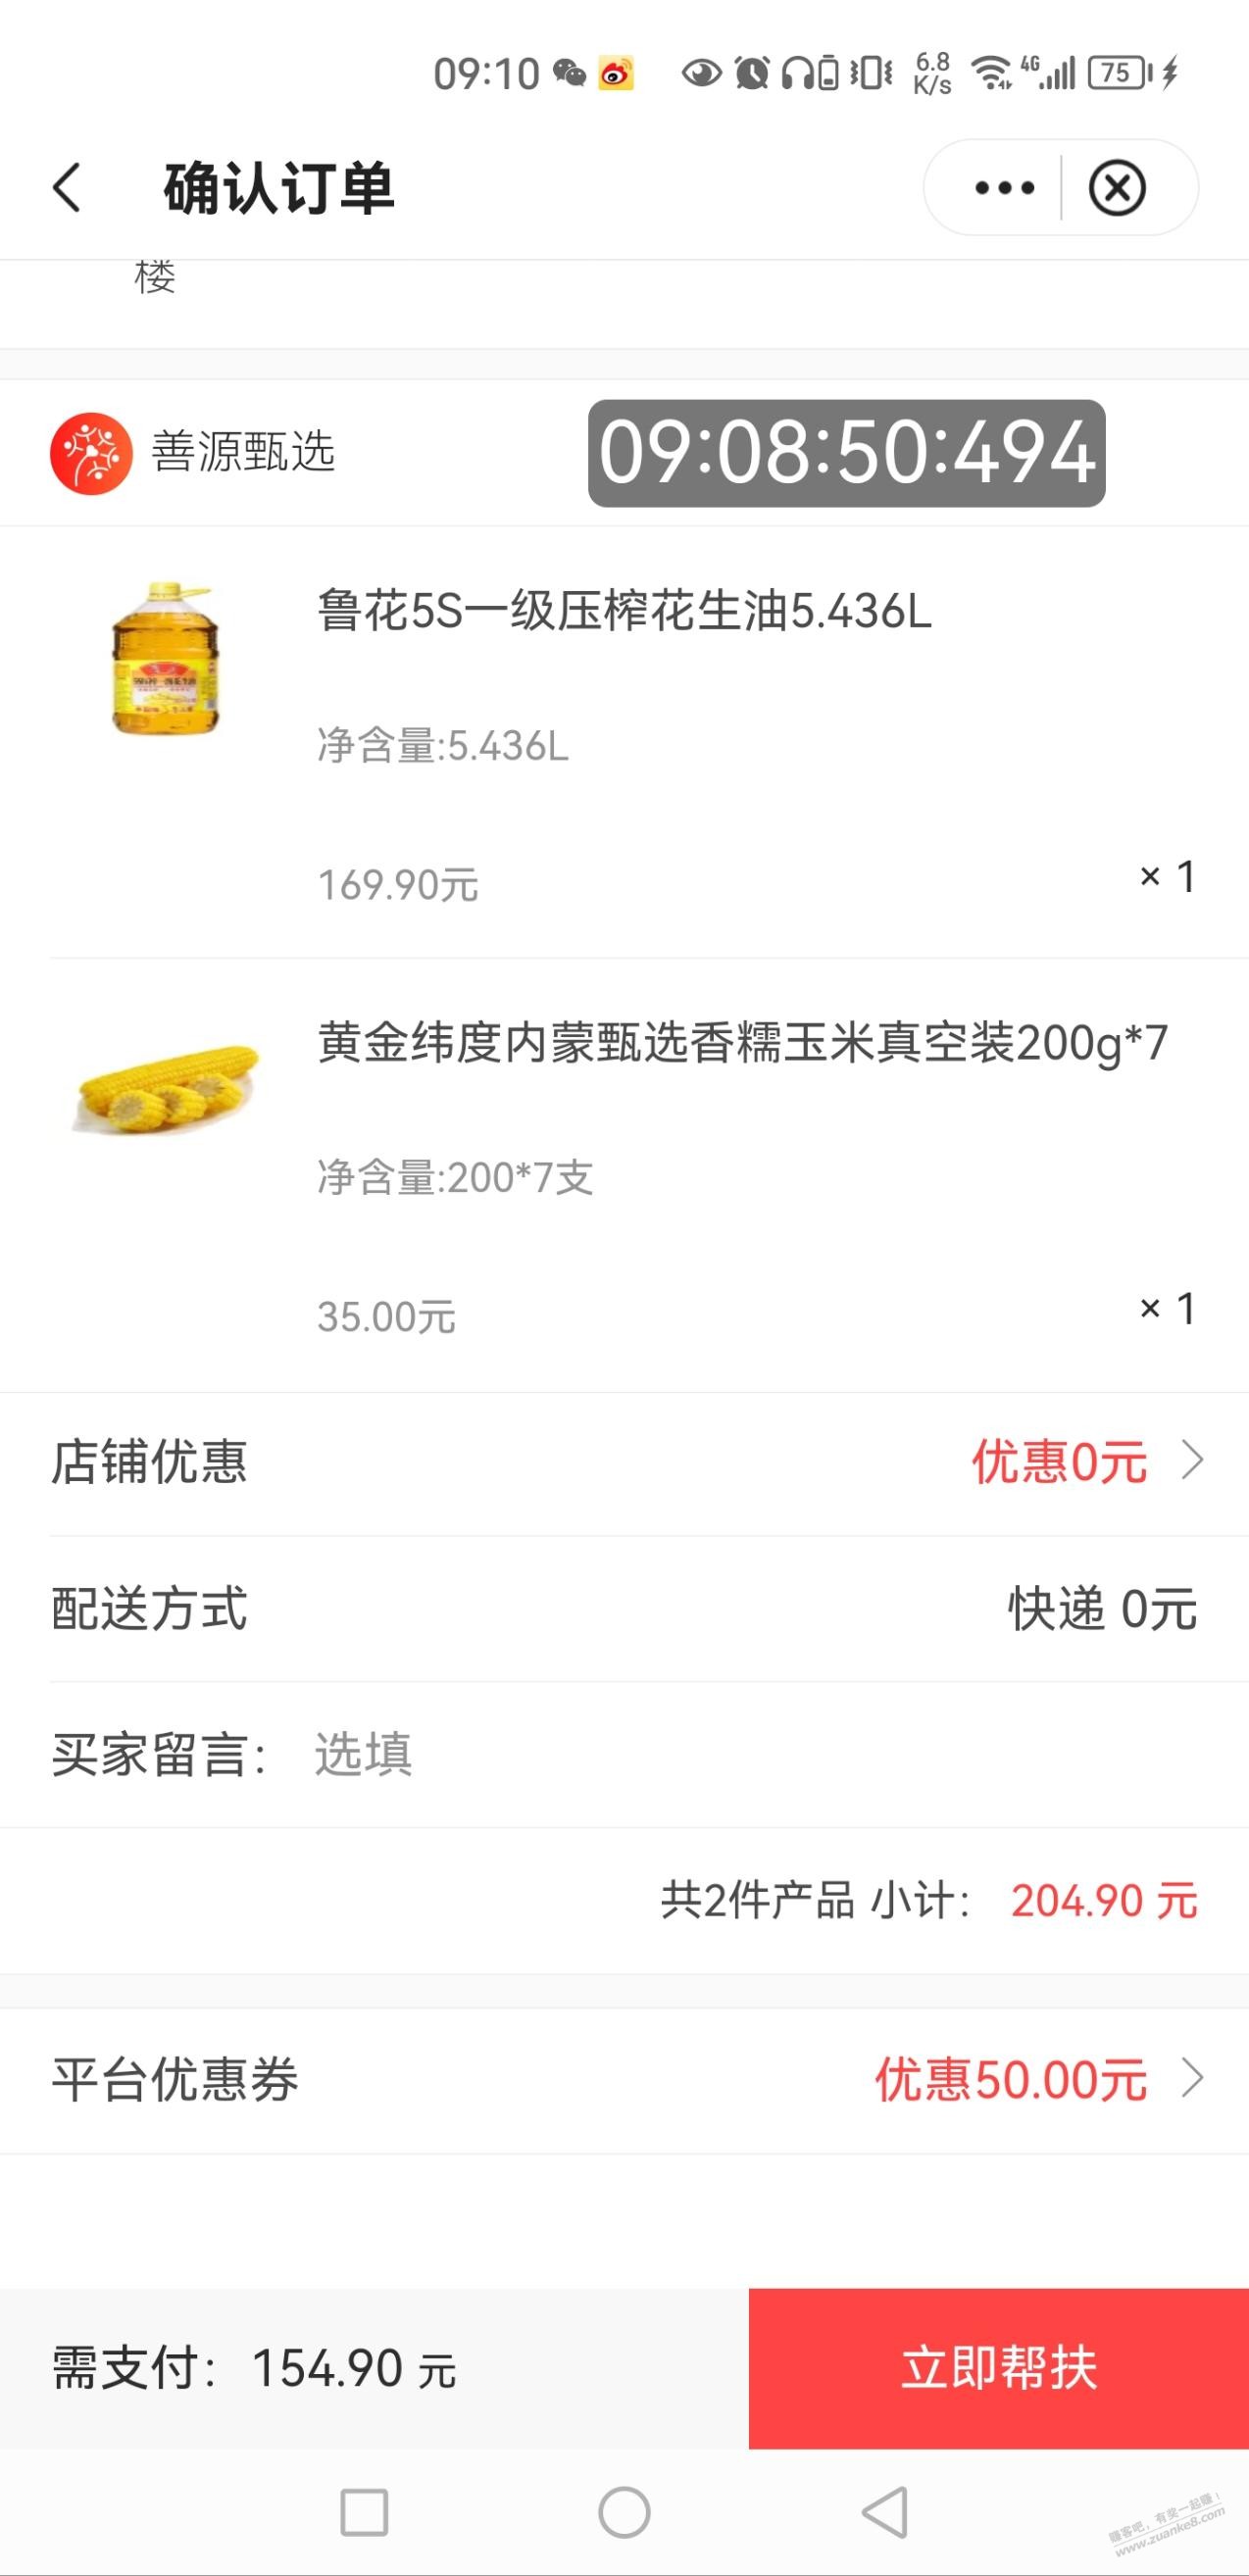 中国银行app生活顶部轮播有199-50助农券-可买鲁花不知是否好价